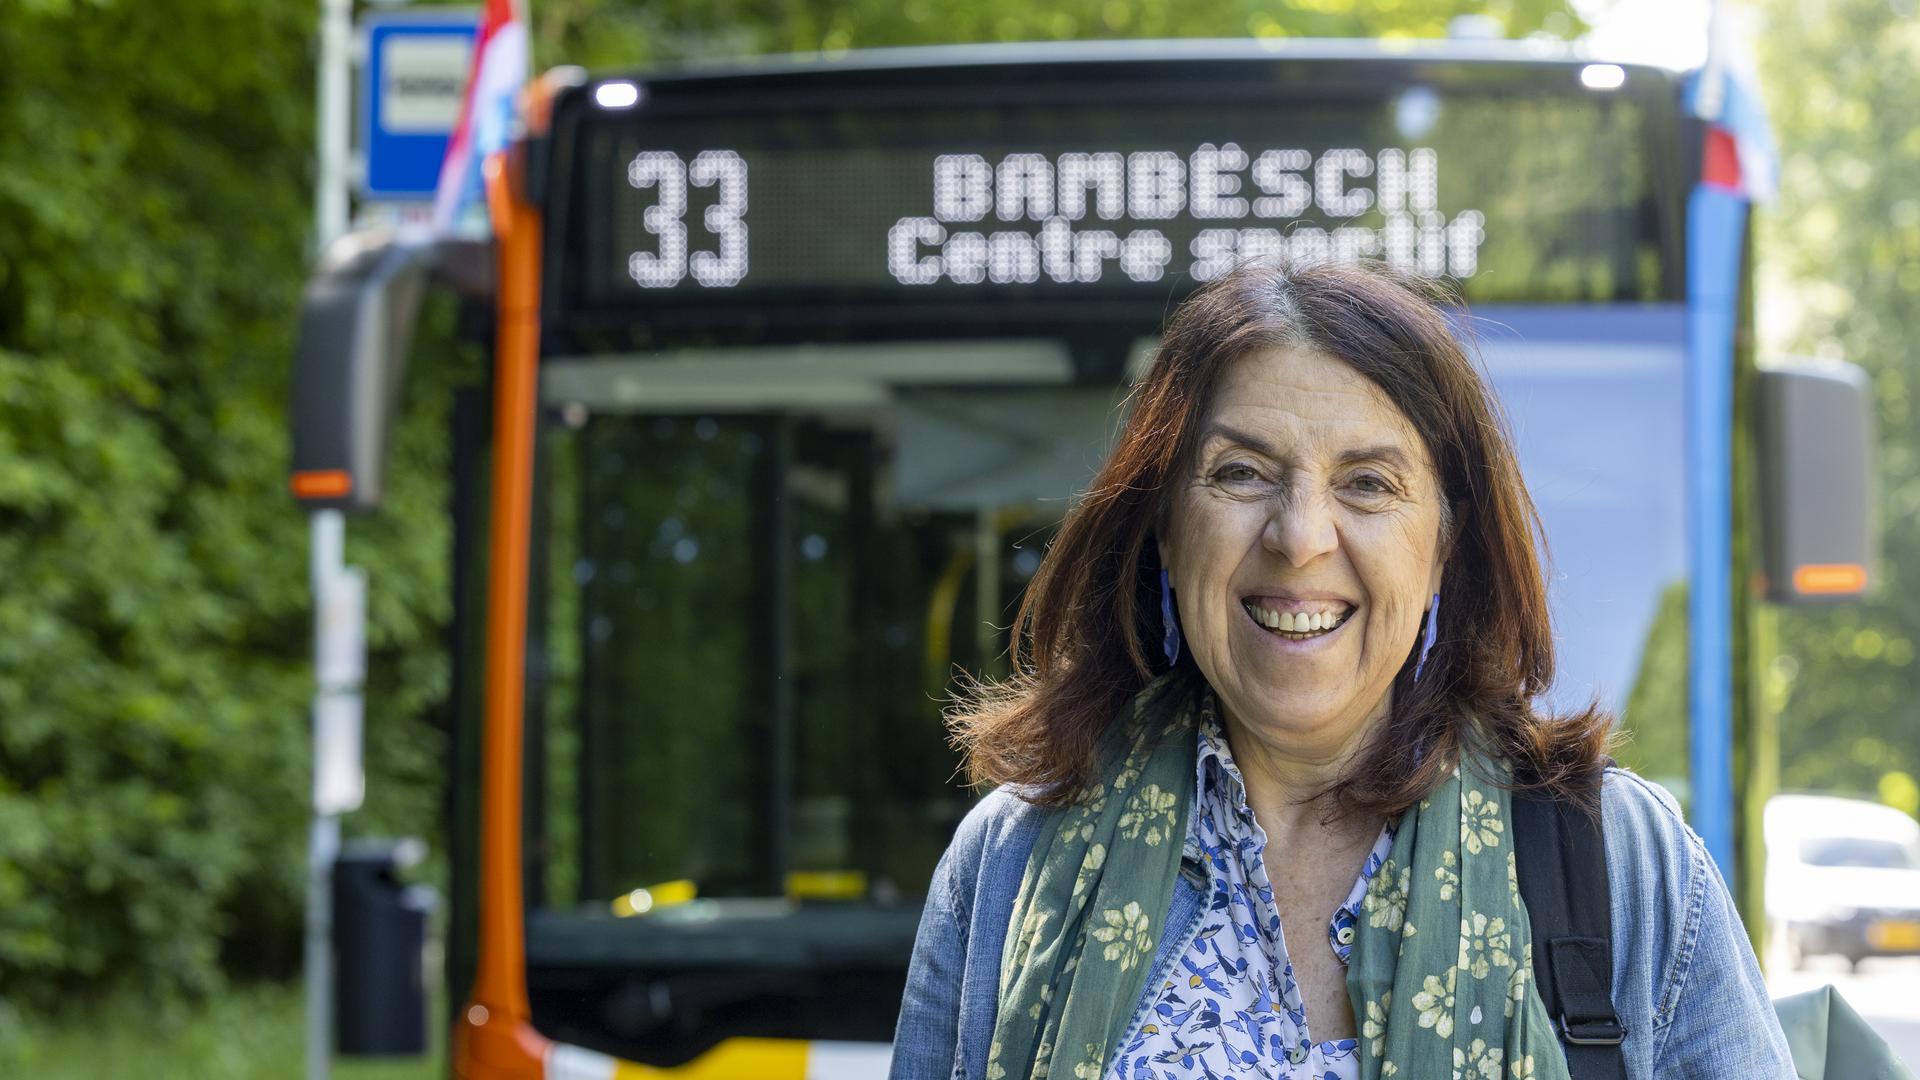 A nova linha de autocarro 33, que liga o centro da cidade ao parque de Bambësch, foi uma das exigências do partido Os Verdes.